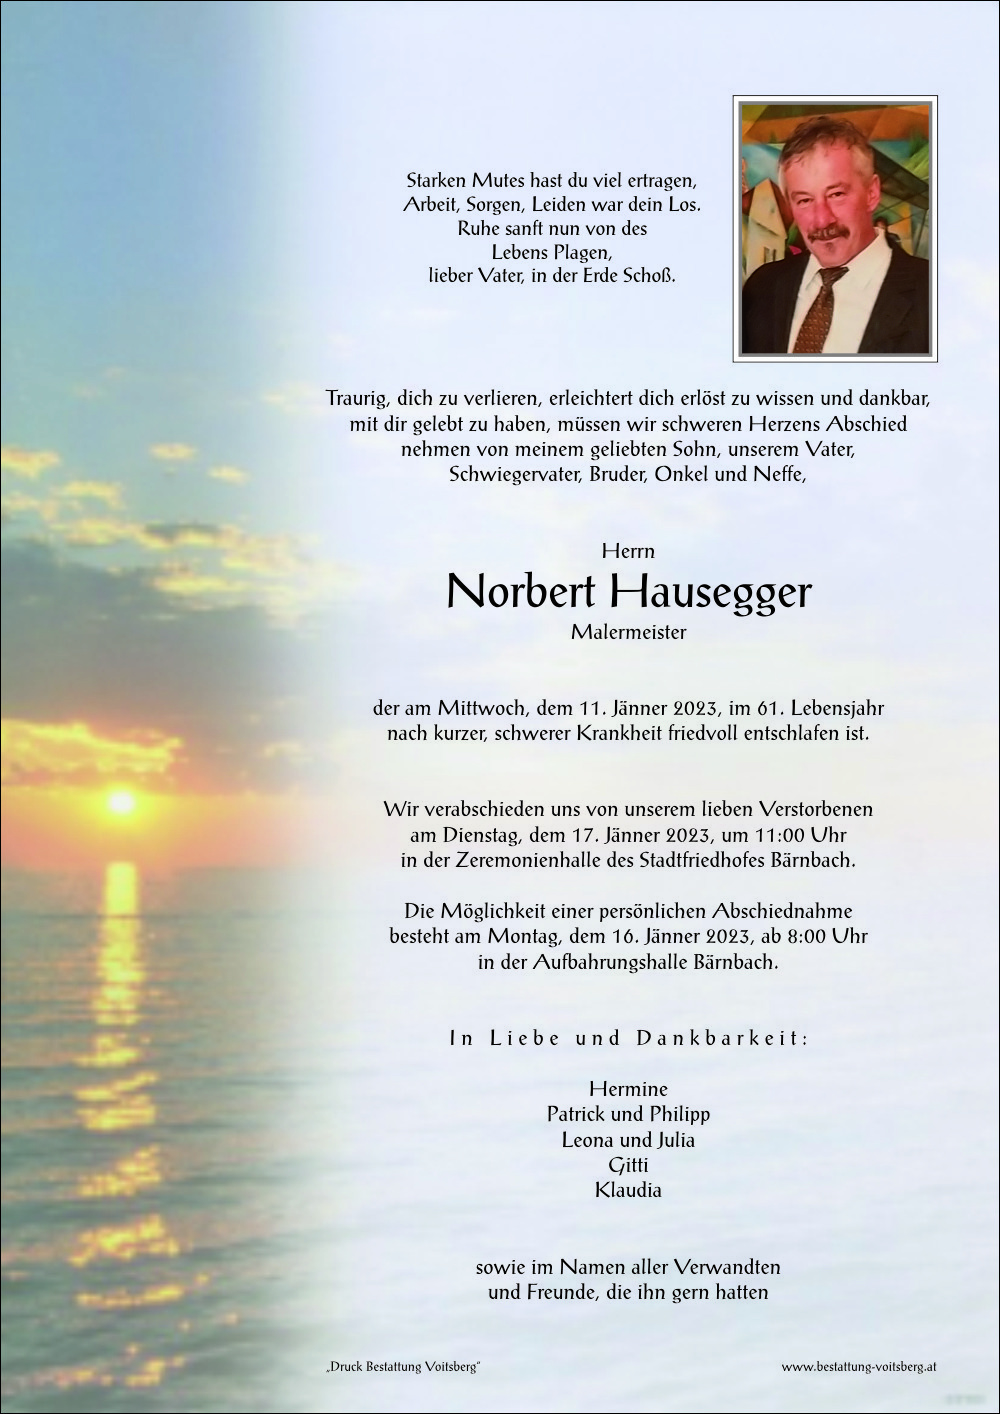 Norbert Hausegger